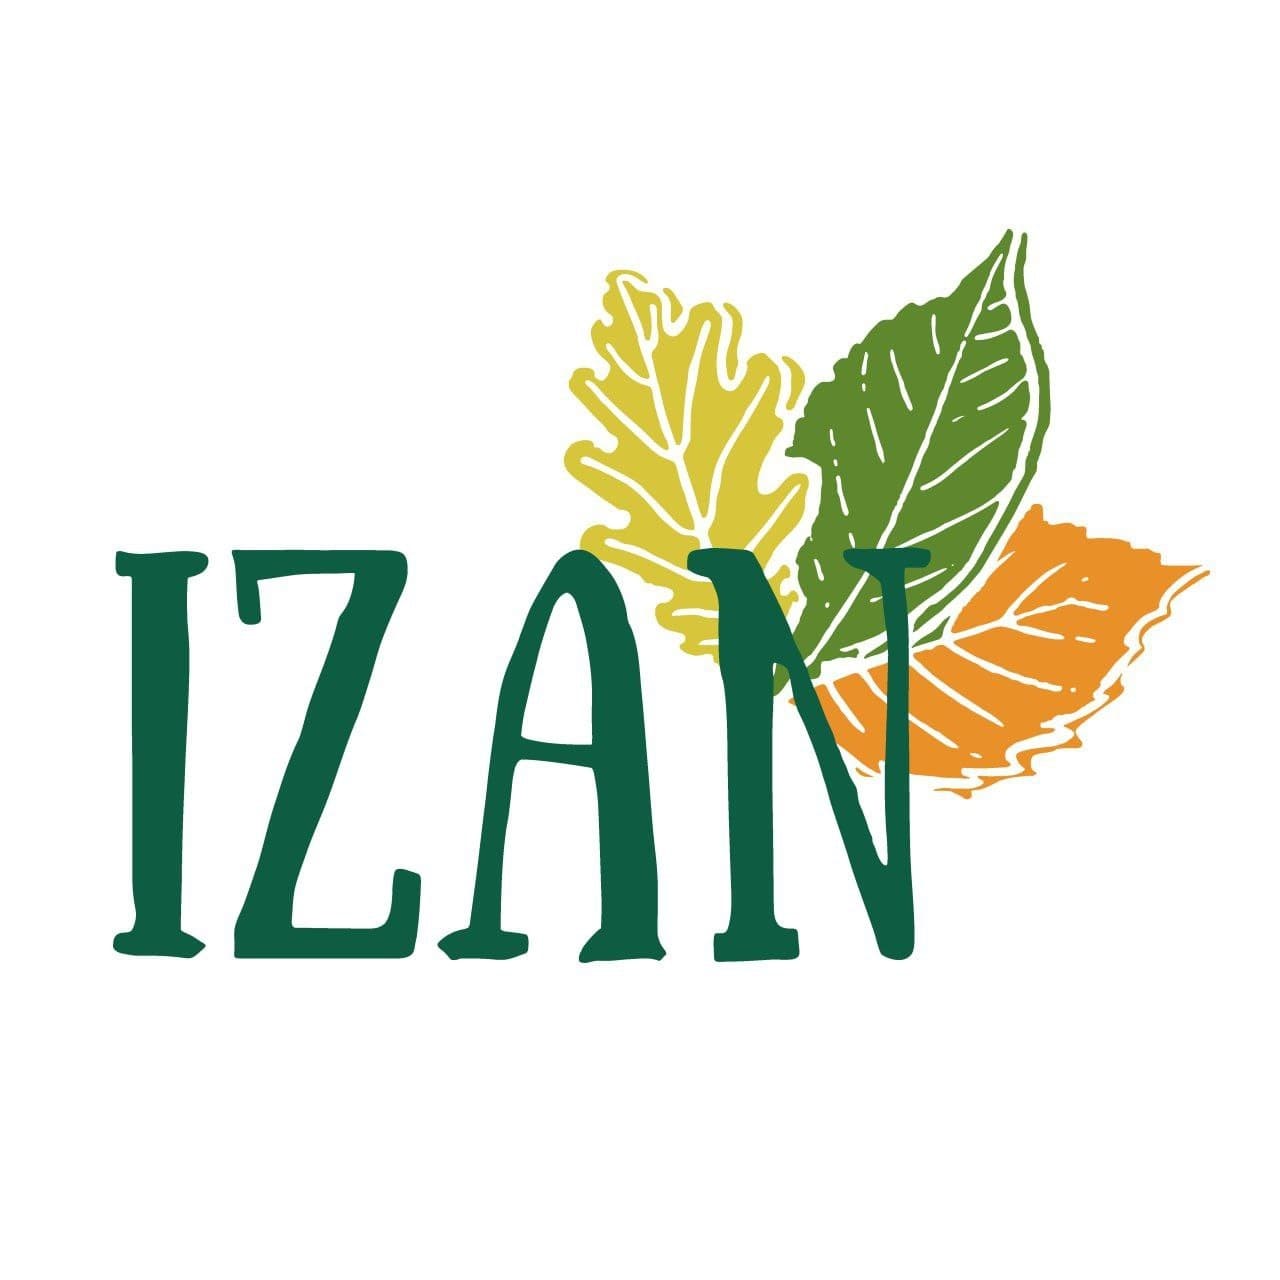 Logotipo de la formación electoral IZAN (IZAN)